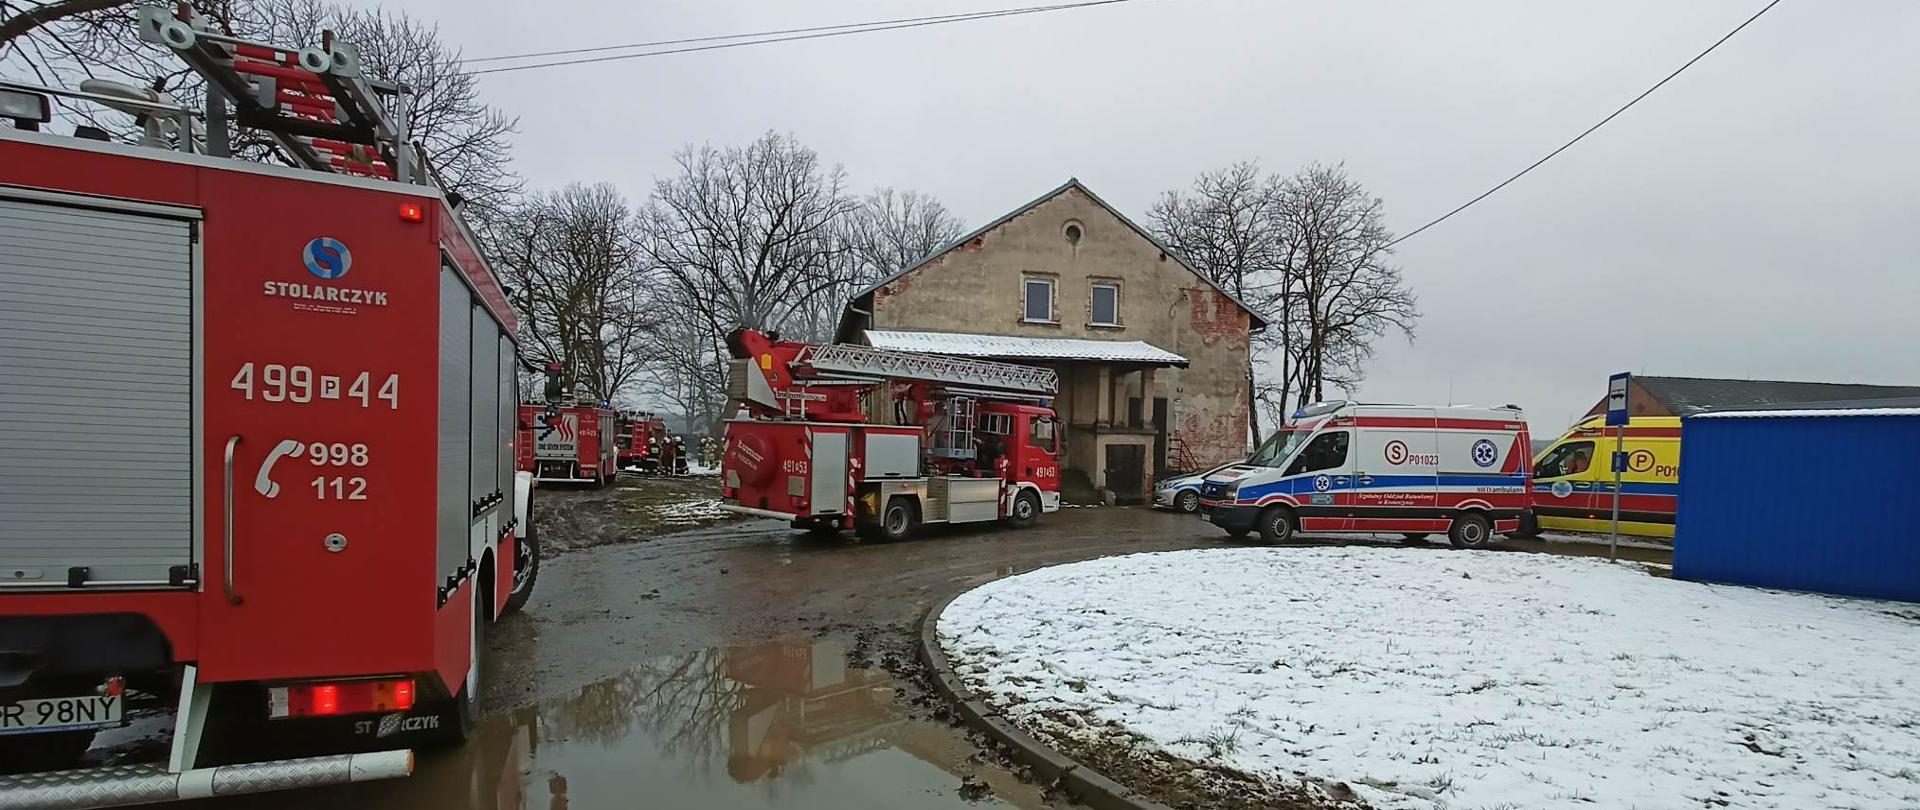 Zdjęcie przedstawia samochody służb ratowniczych (Straży Pożarnej, Zespołów Ratownictwa Medycznego i Policji), pojazdy stoją przy budynku, w którym doszło do pożaru. 